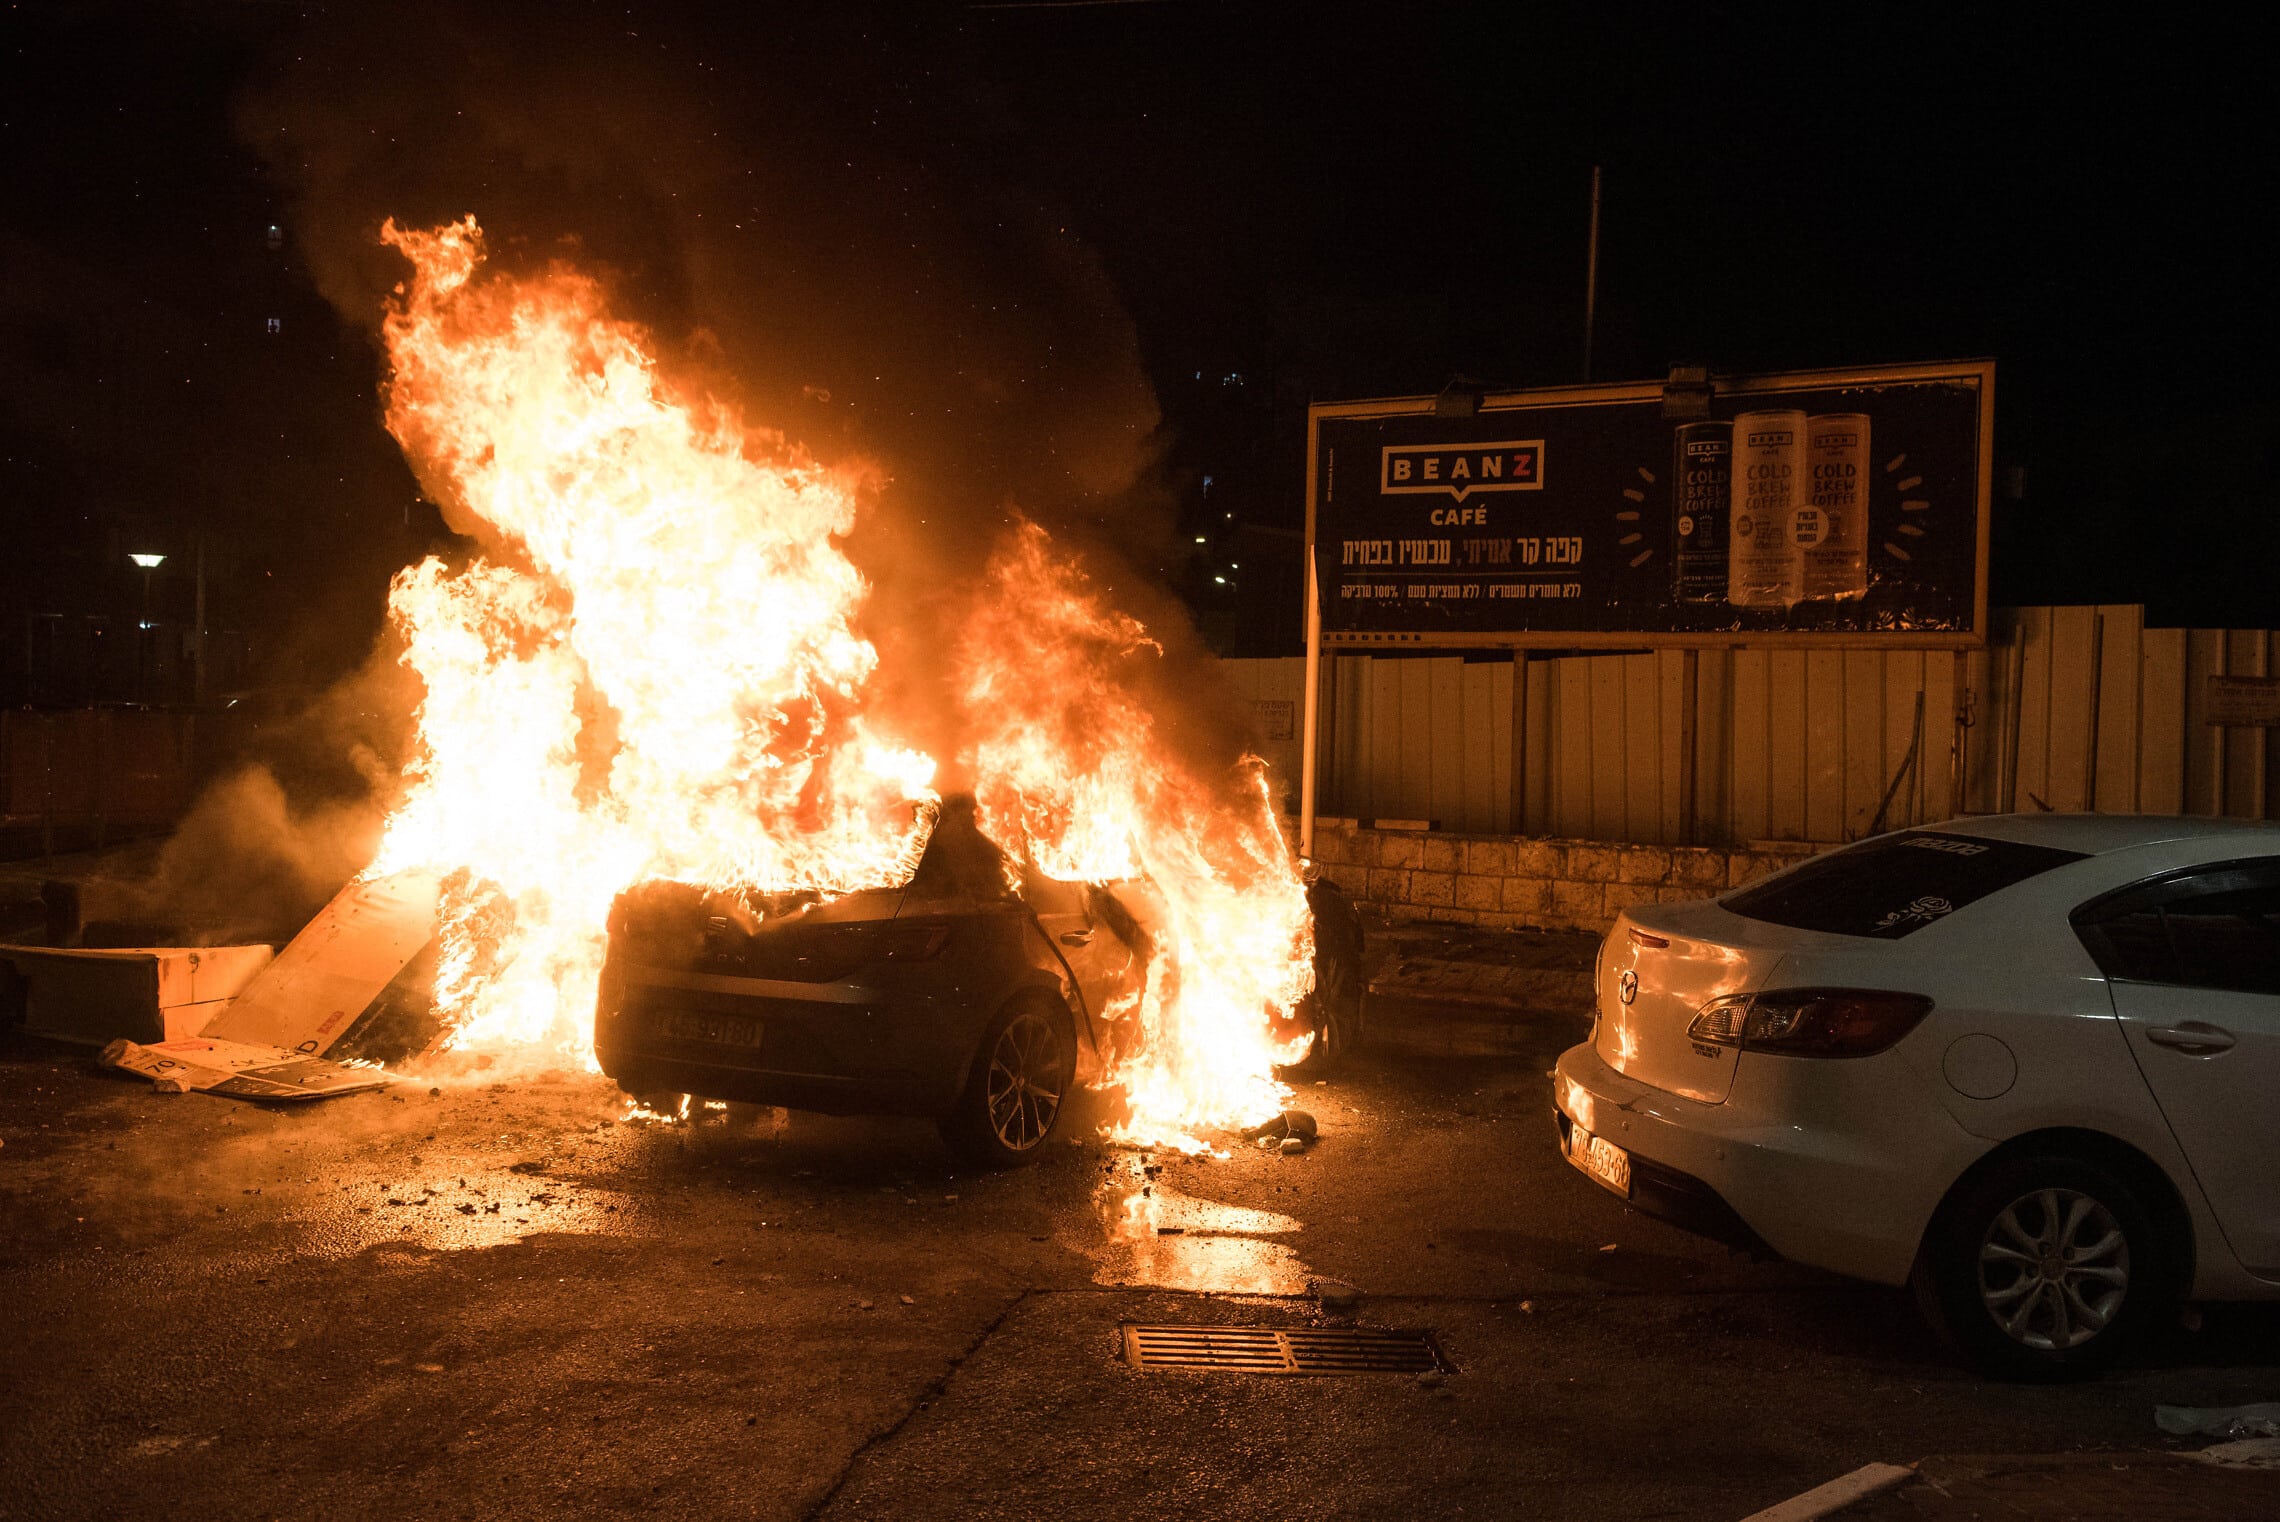 מכונית עולה באש בזמן המהומות בין ערבים ליהודים בעכו, 12 במאי 2021 (צילום: Roni Ofer/Flash90)